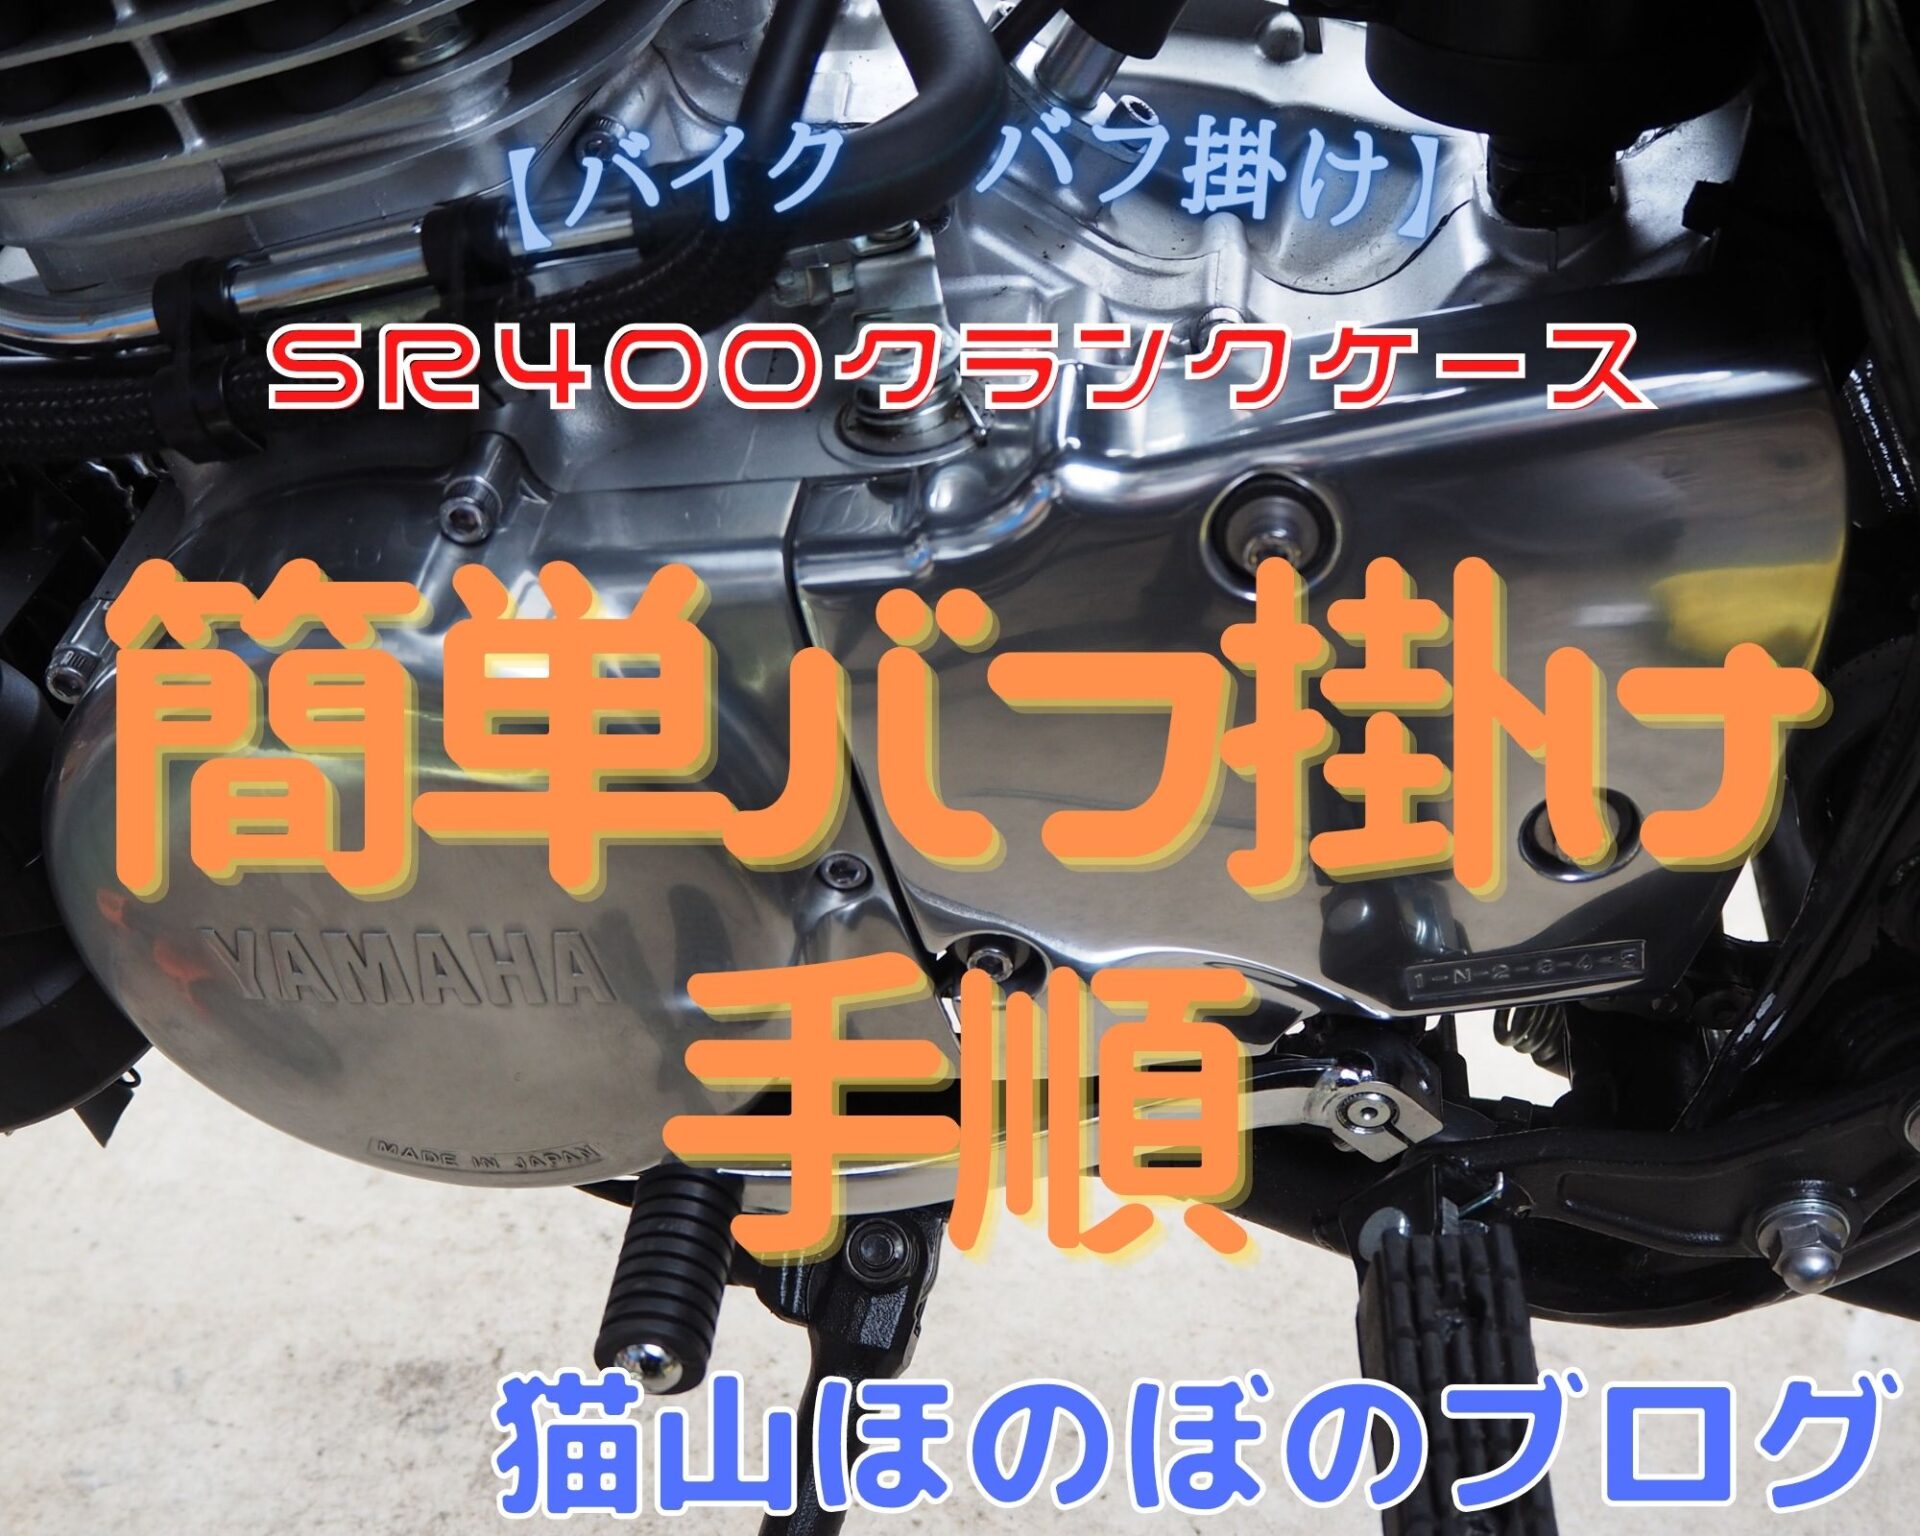 バイク バフ掛け】SR400クランクケース 簡単バフ掛け手順動画とブログ 